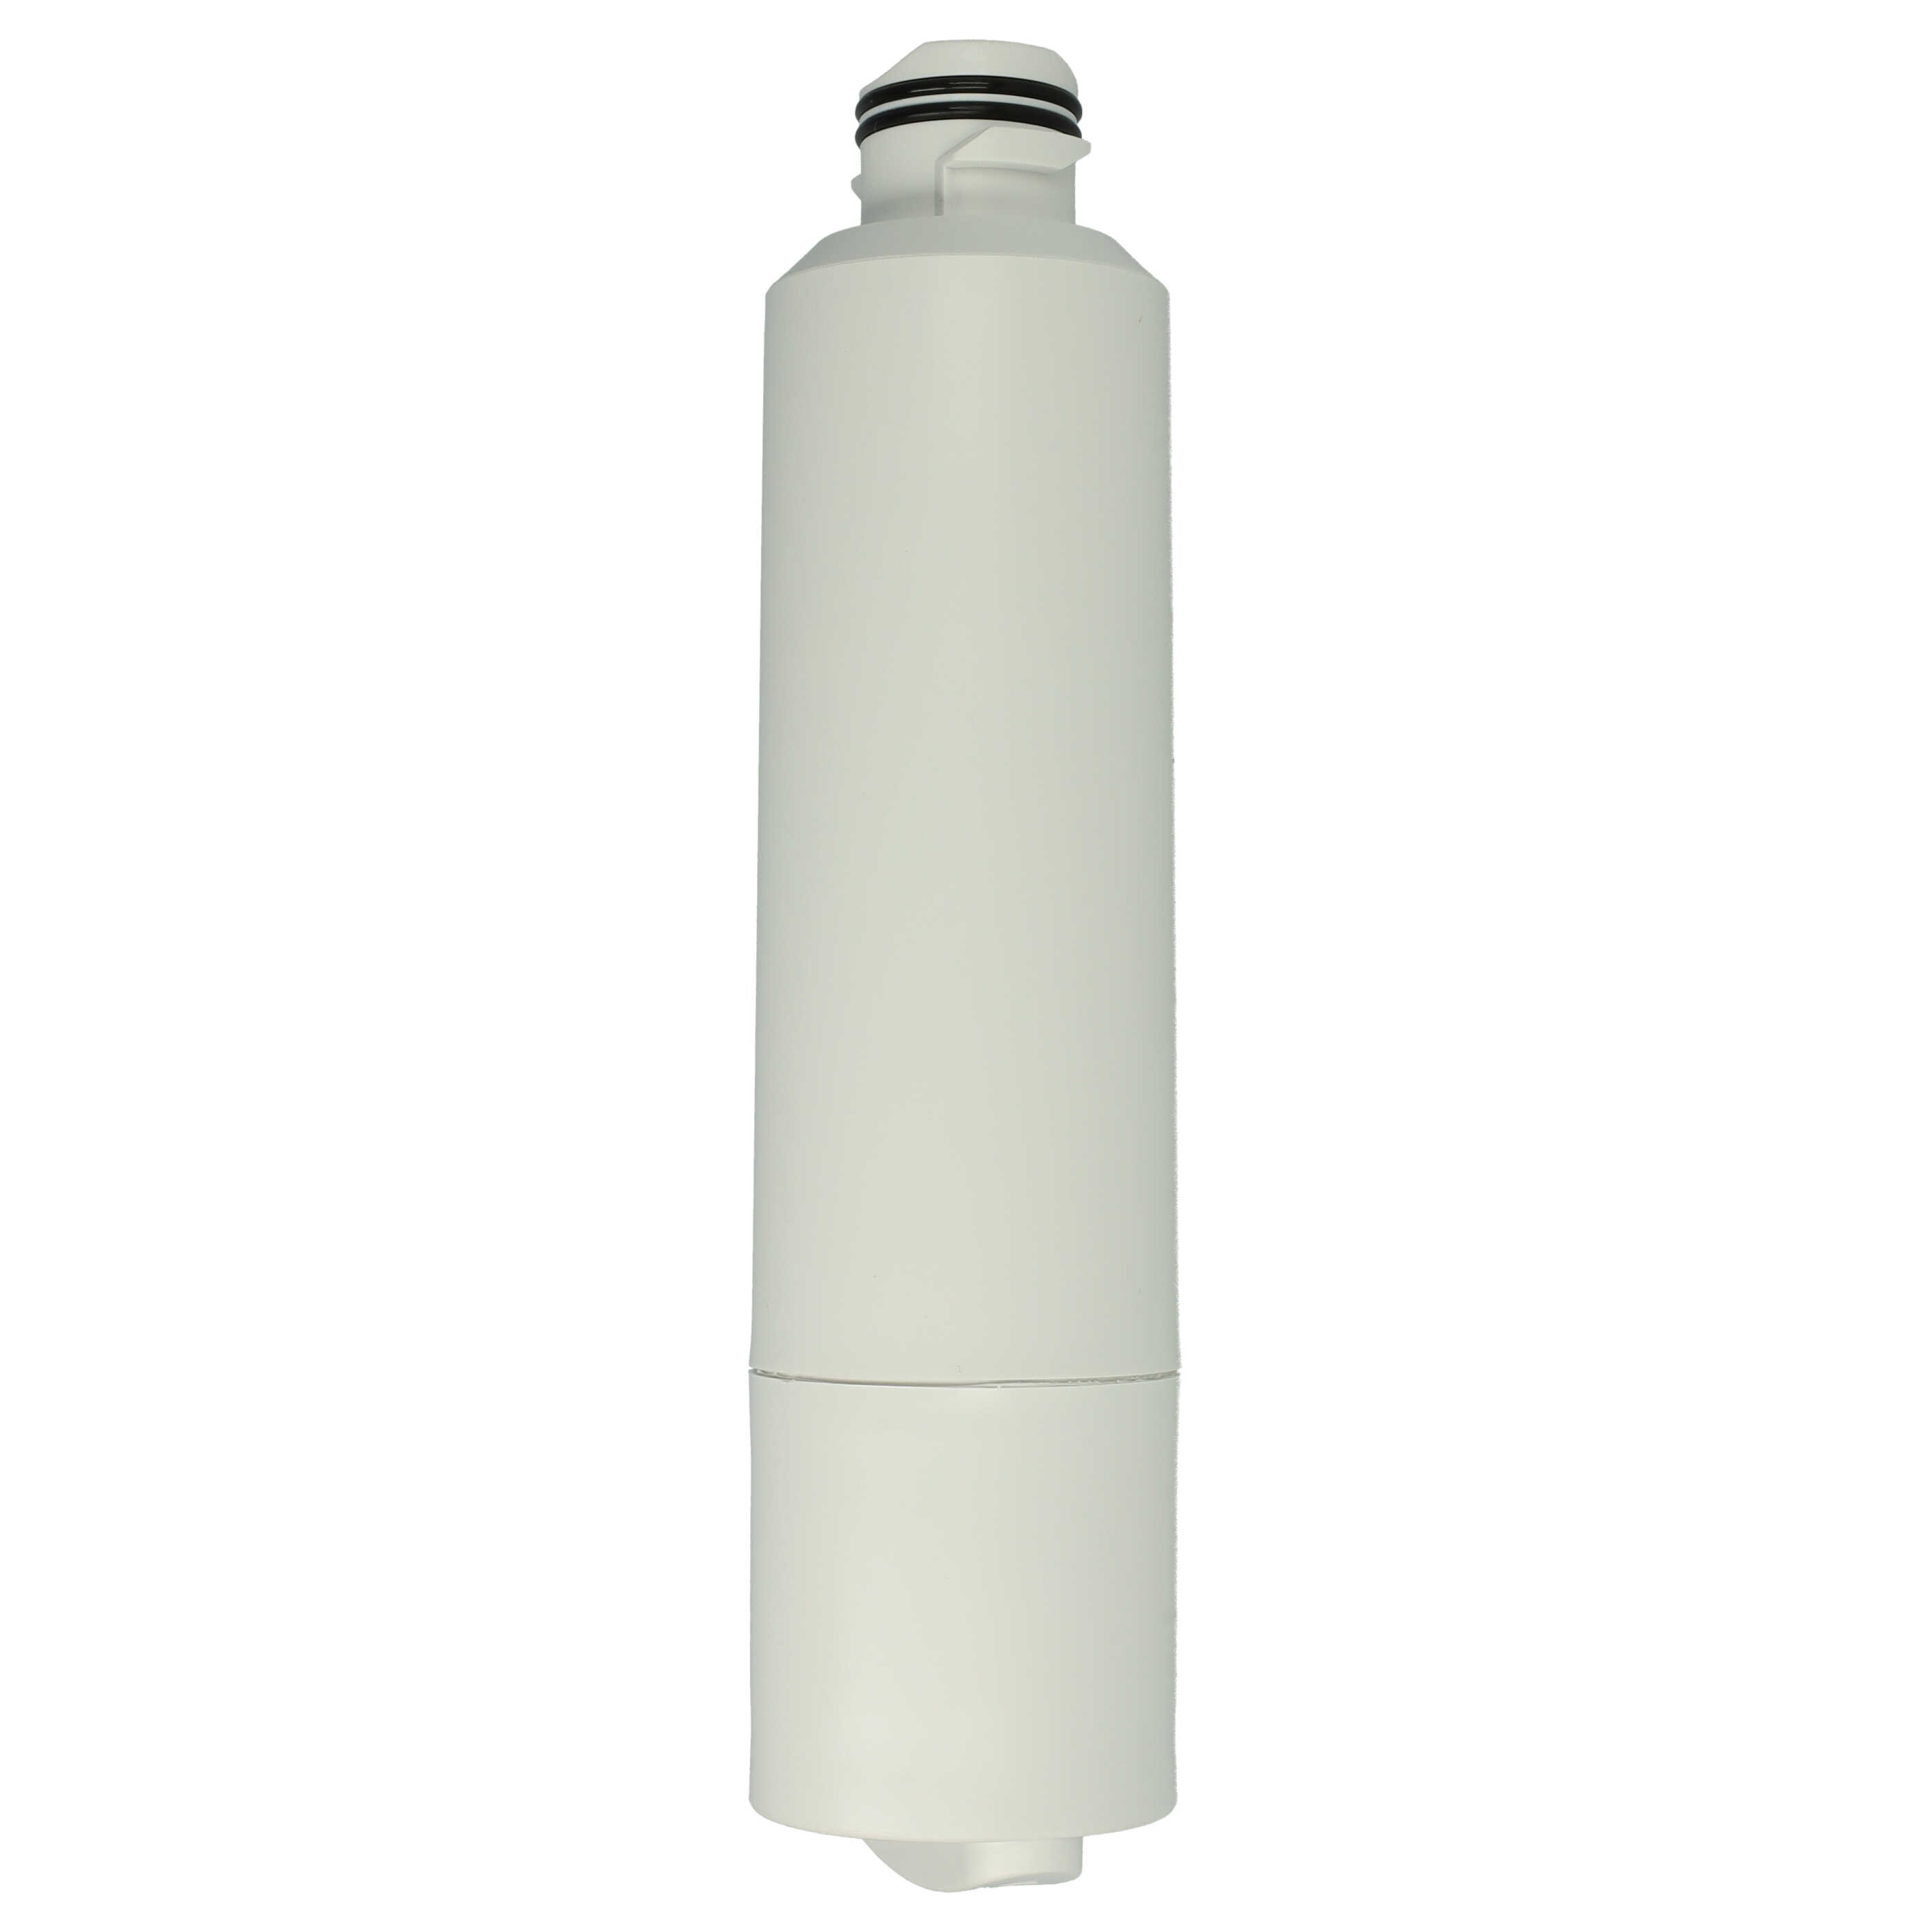 Fridge Water Filter replaces Samsung DA29-00020A, DA29-00020BF, DA29-00020BM for Side-by-Side Refrigerator